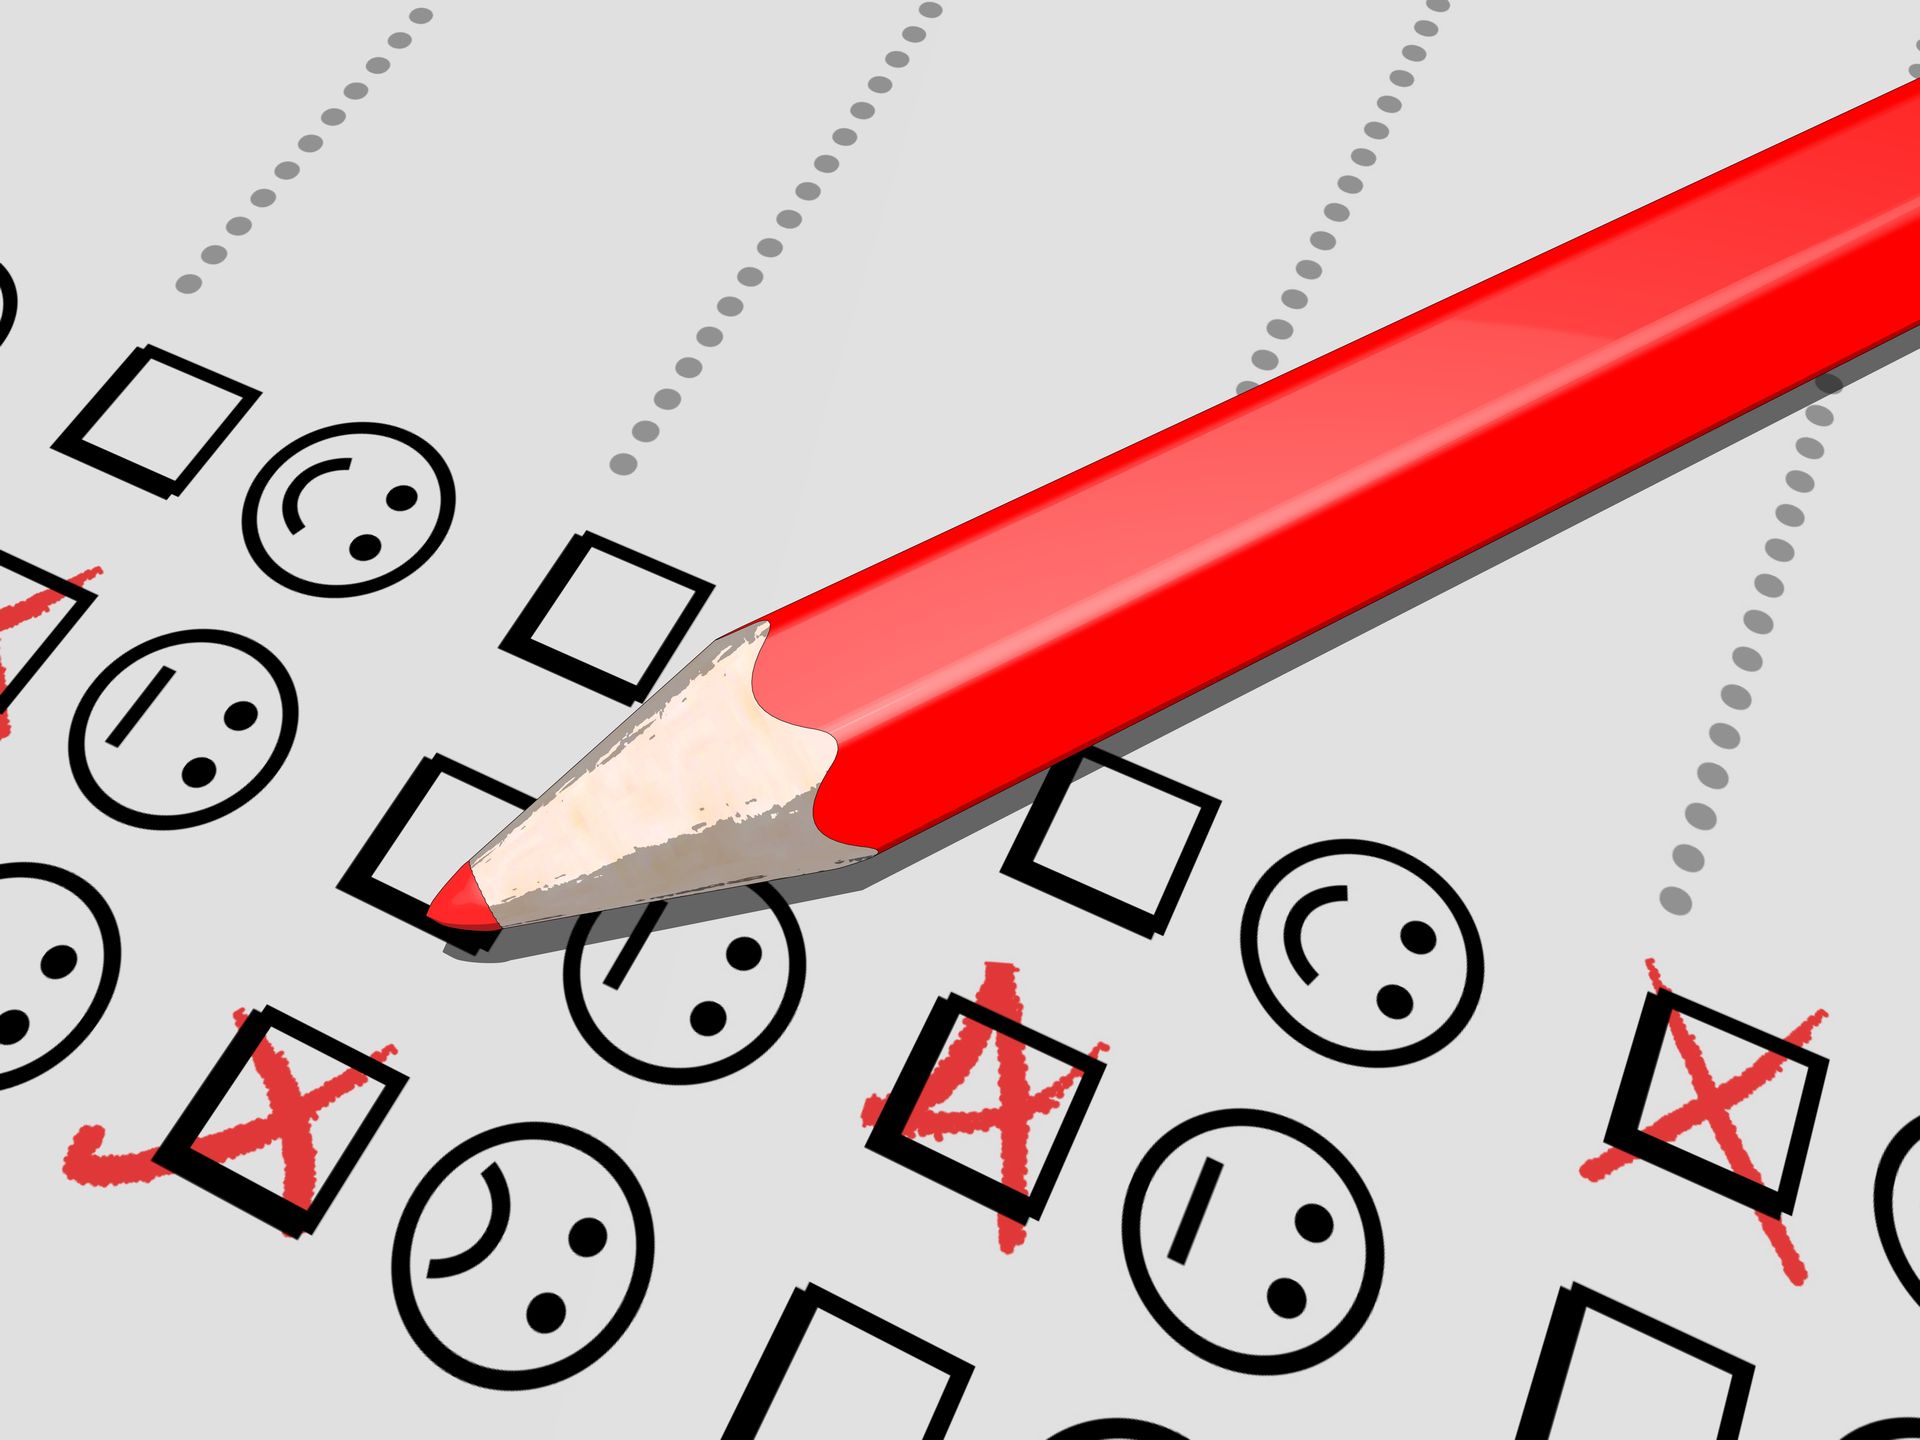 Grafik von einem Ausschnitt eines Bewertungsbogen zum Ankreuzen mit positiven, neutralen und negativen Smileys.  Ein roter Buntstift kreuzt die zugehörigen Kästchen an.